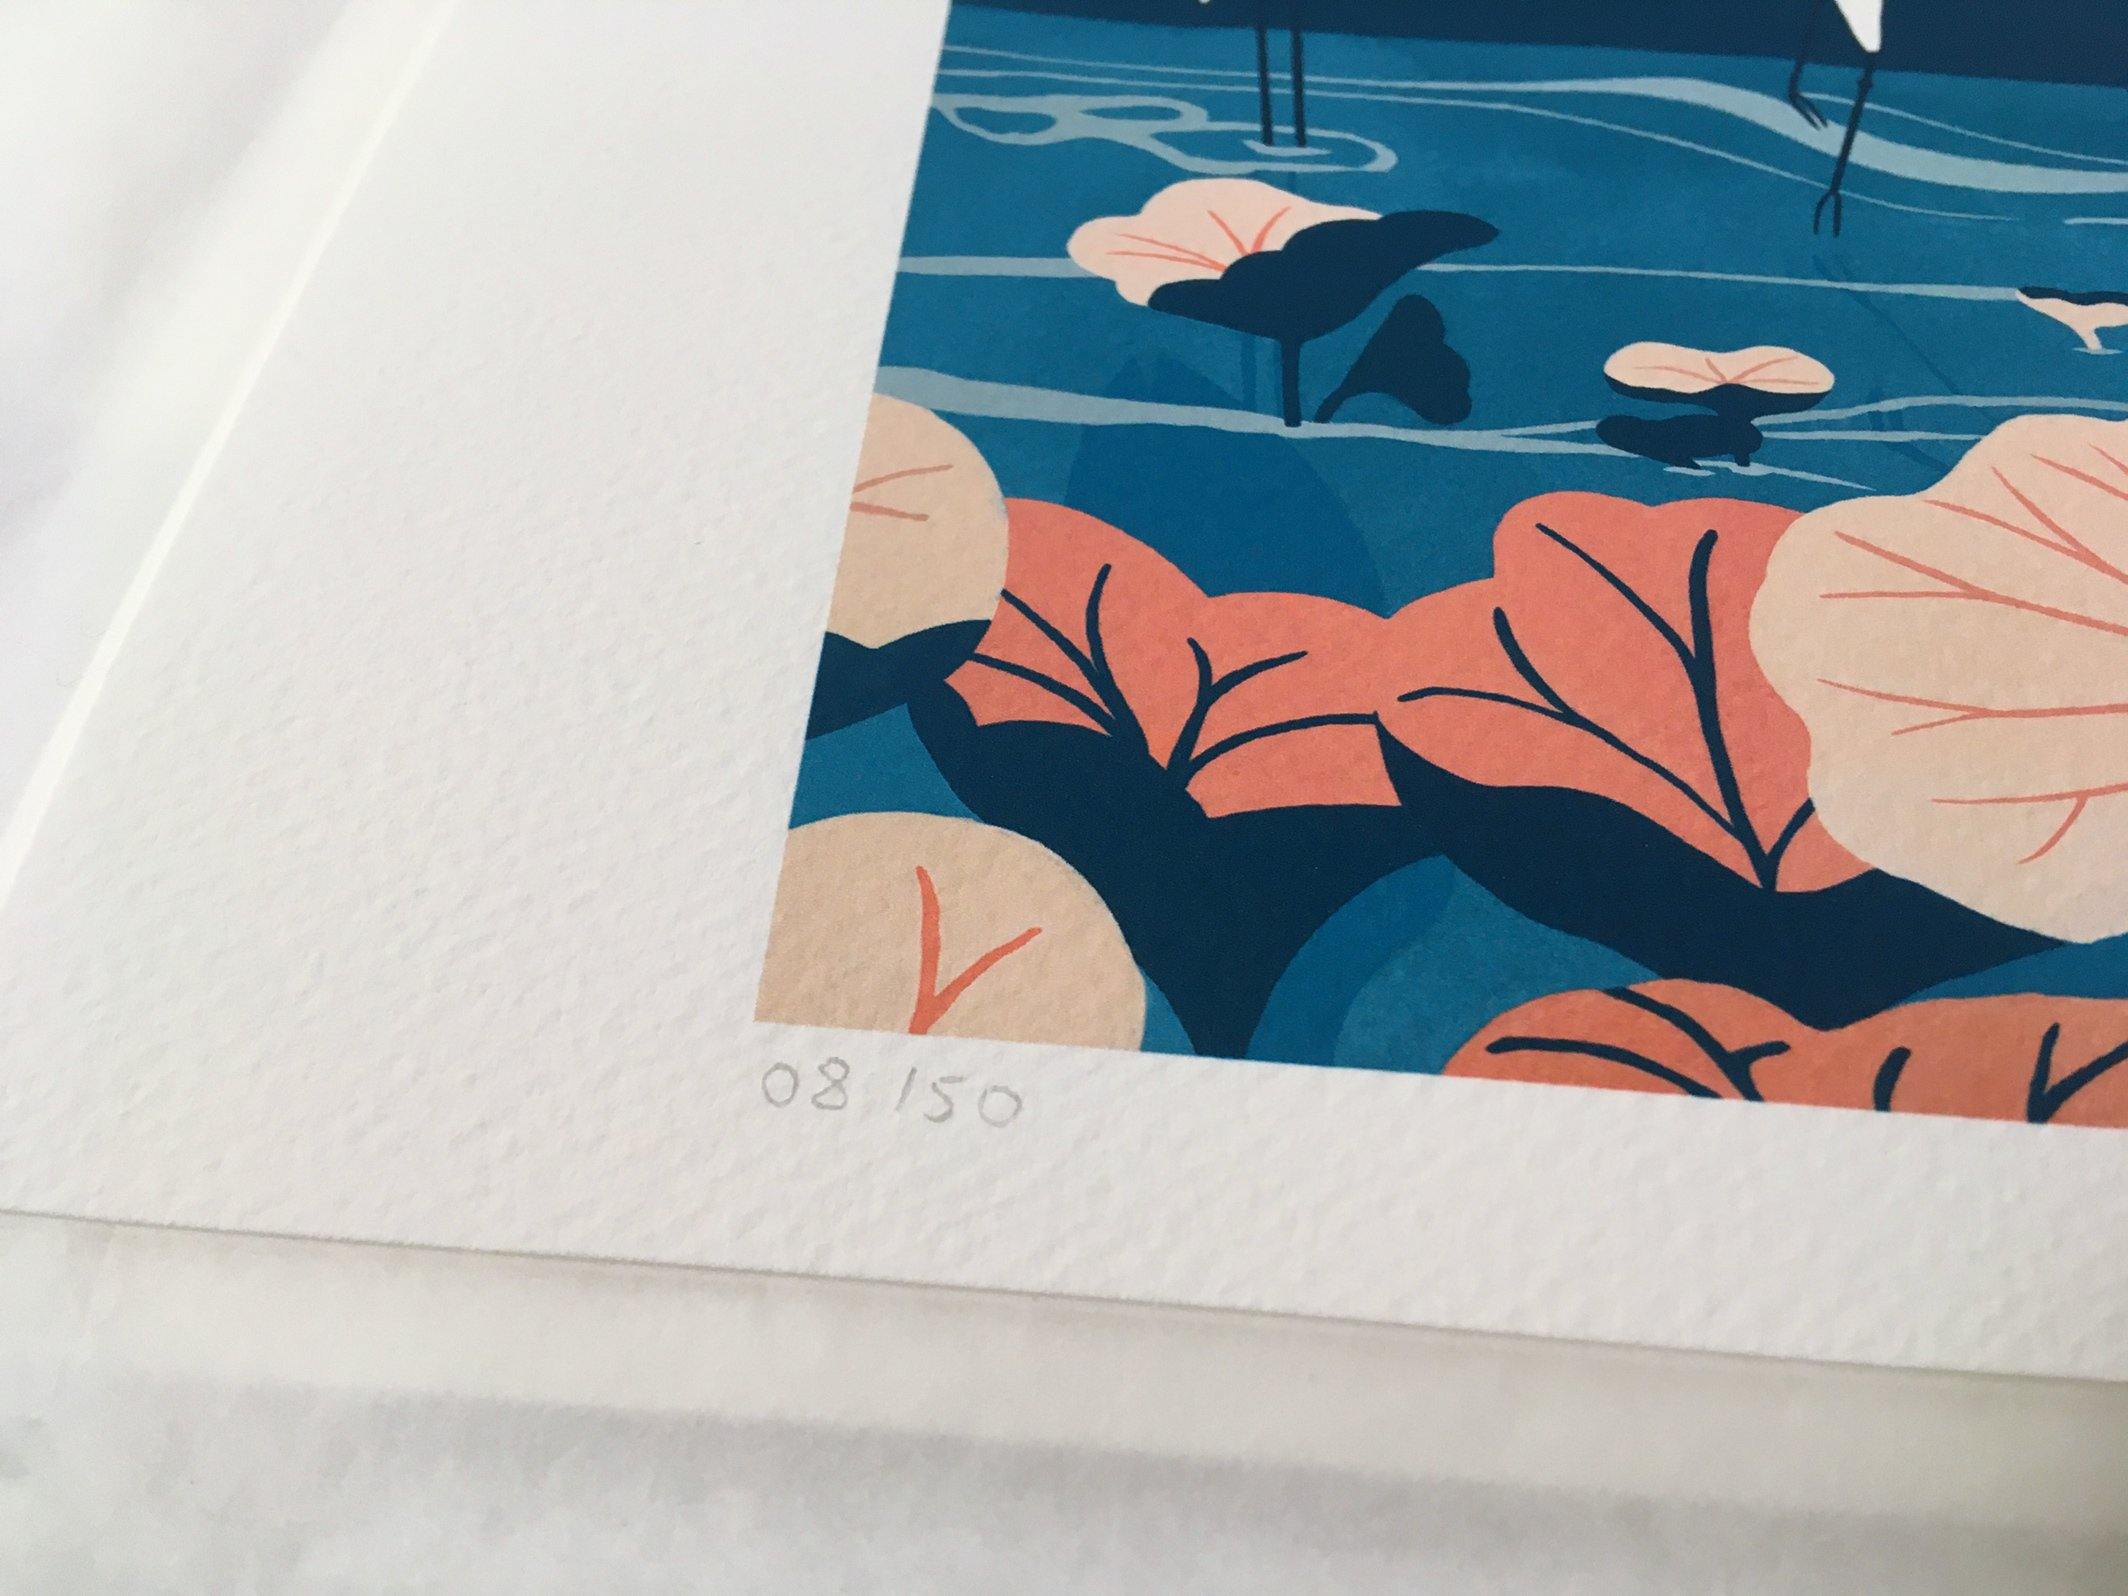 Photographie zoom sur la numérotation du tirage d'art de l'affiche colorée bleu et corail, dessinée par Roxane Campoy illustrant des grues japonaises.